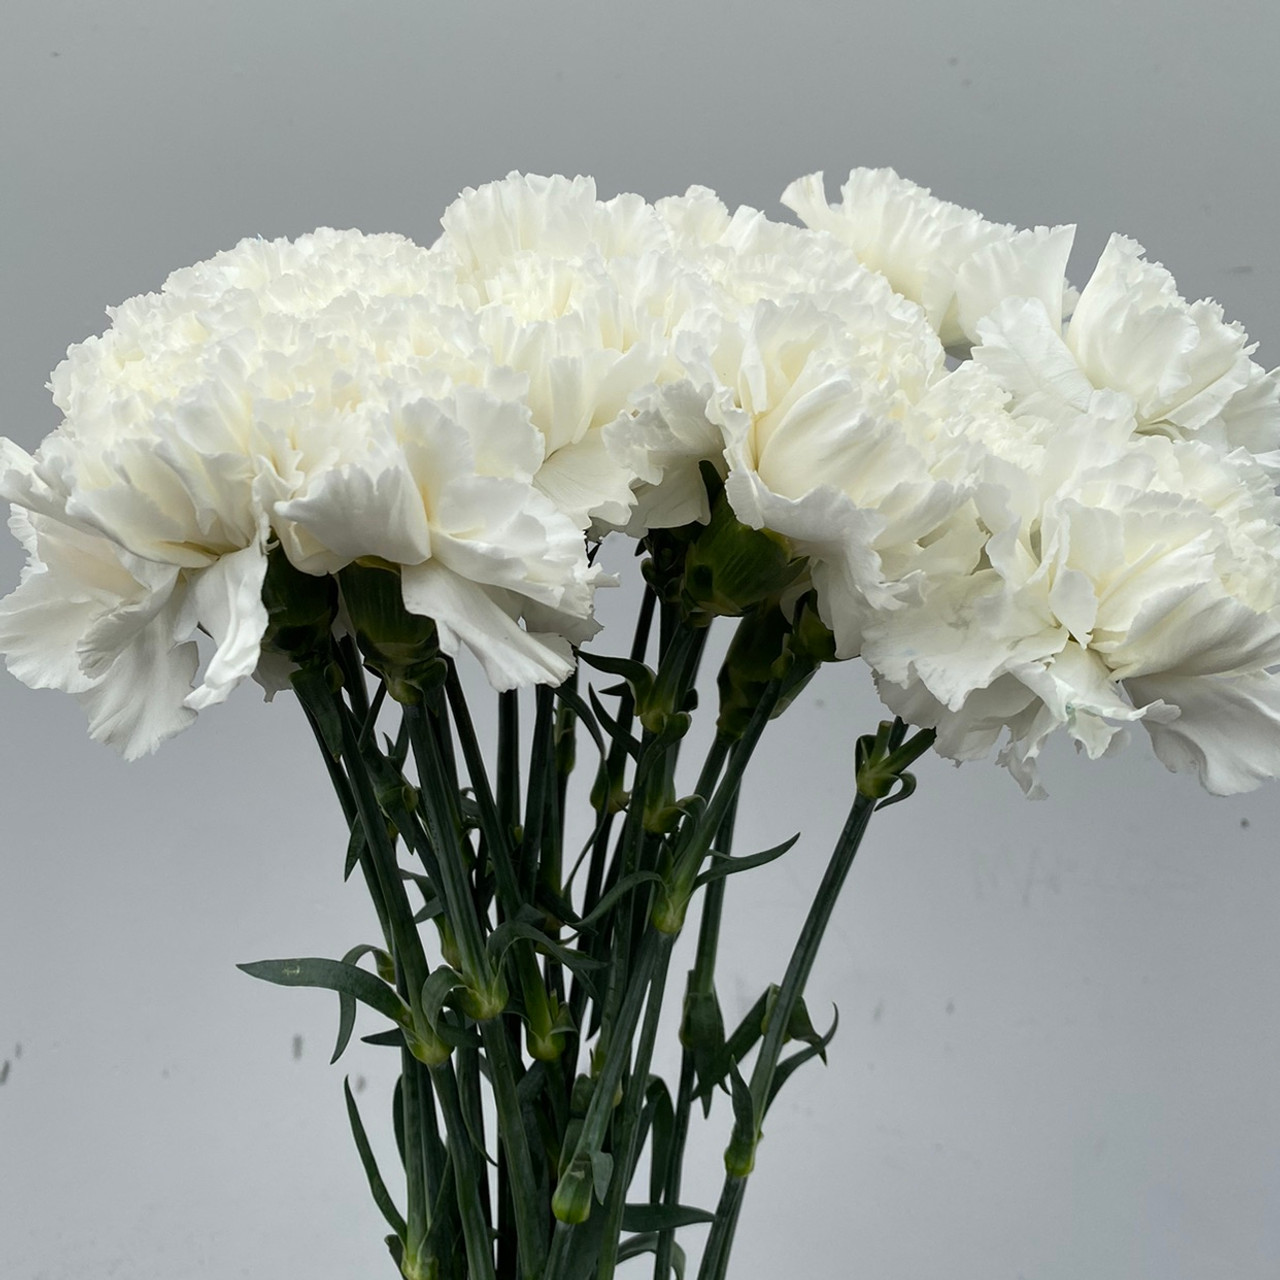 Carnation Magenta - 25st - Ramirez Wholesale Flowers Inc